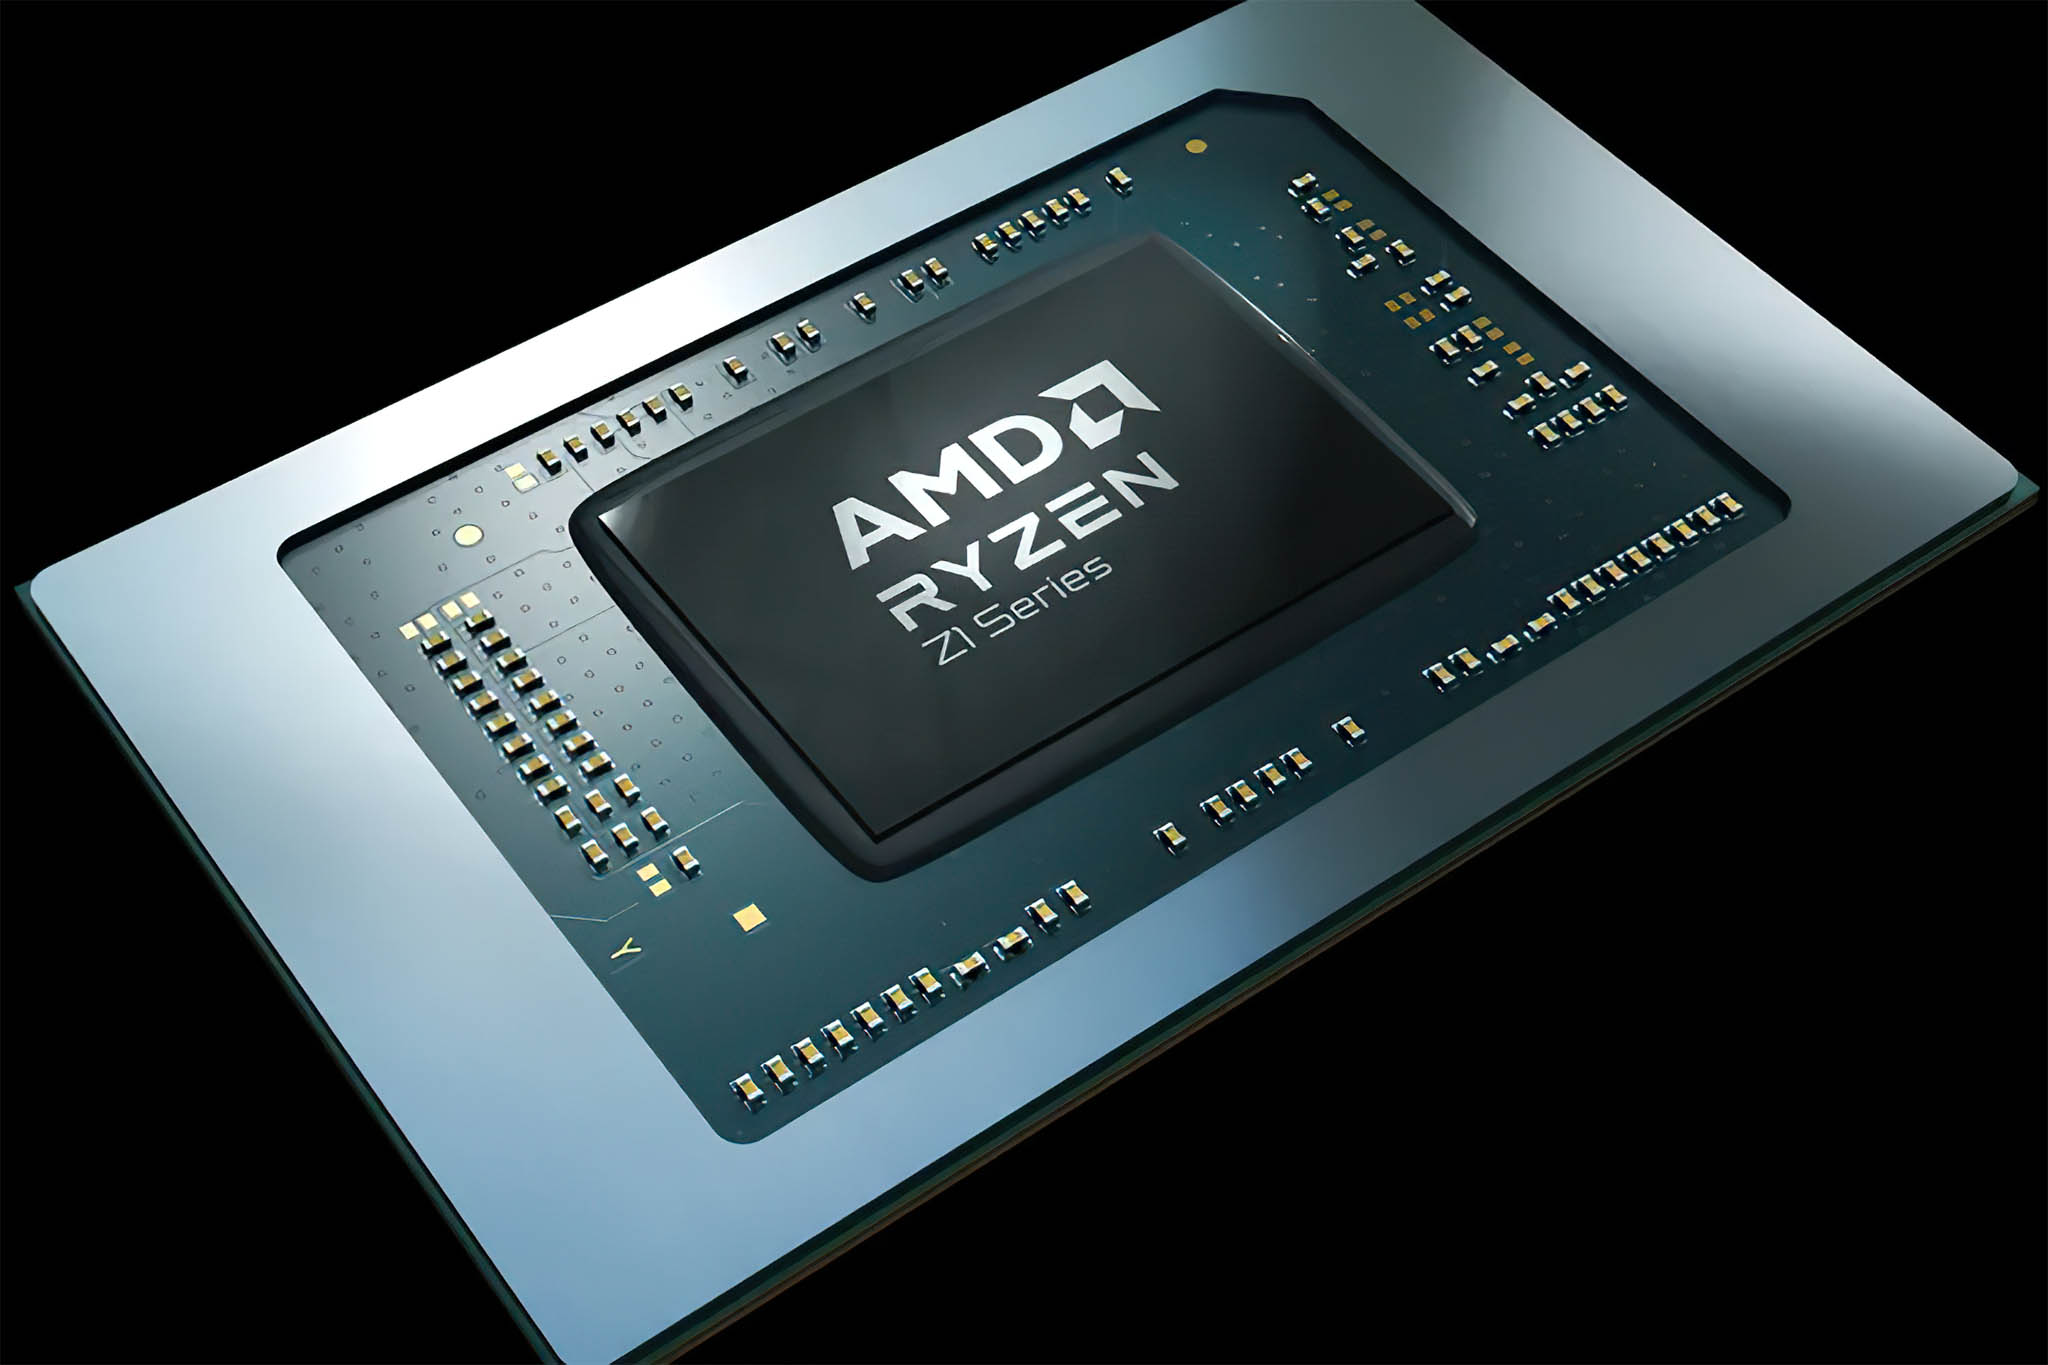 AMD Ryzen Z1: Chip xử lý cho PC gaming cầm tay, sức mạnh vượt qua PS4 Pro